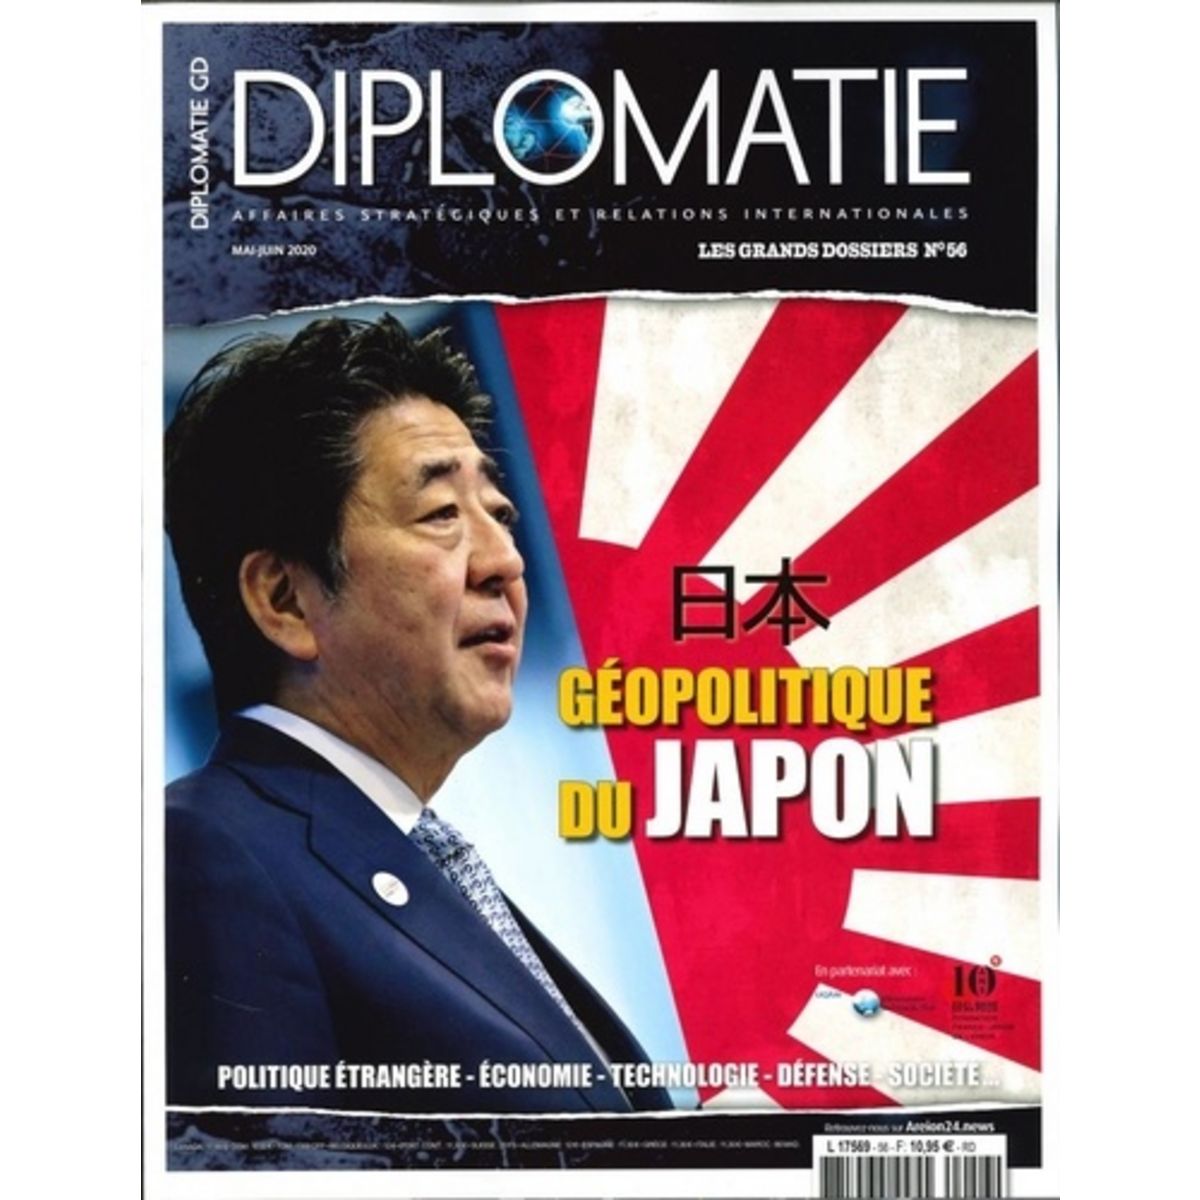  DIPLOMATIE LES GRANDS DOSSIERS N° 56, MAI-JUIN 2020 : GEOPOLITIQUE DU JAPON, Bautzmann Alexis